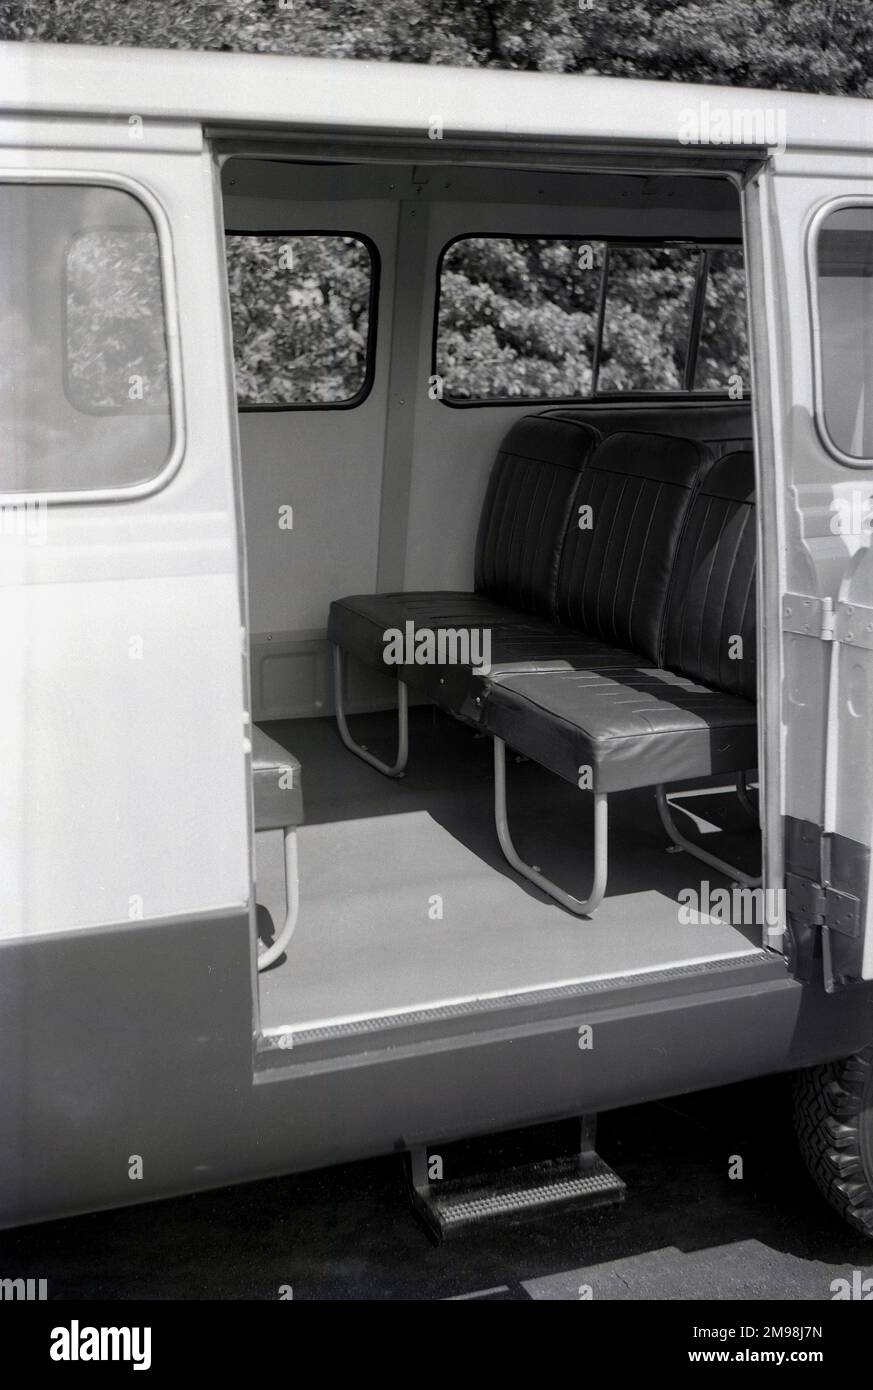 1957, historisch, ein seitlicher Blick auf das Innere eines Ford Thames 15 cwt 400E Minibus oder Kleinplatzträgers, der die grundlegende Sitzanordnung zeigt. Der Van 400E war ein leichtes Nutzfahrzeug, das von 1957 bis 1965 von Ford UK in Dagenham, Großbritannien, hergestellt wurde. Stockfoto